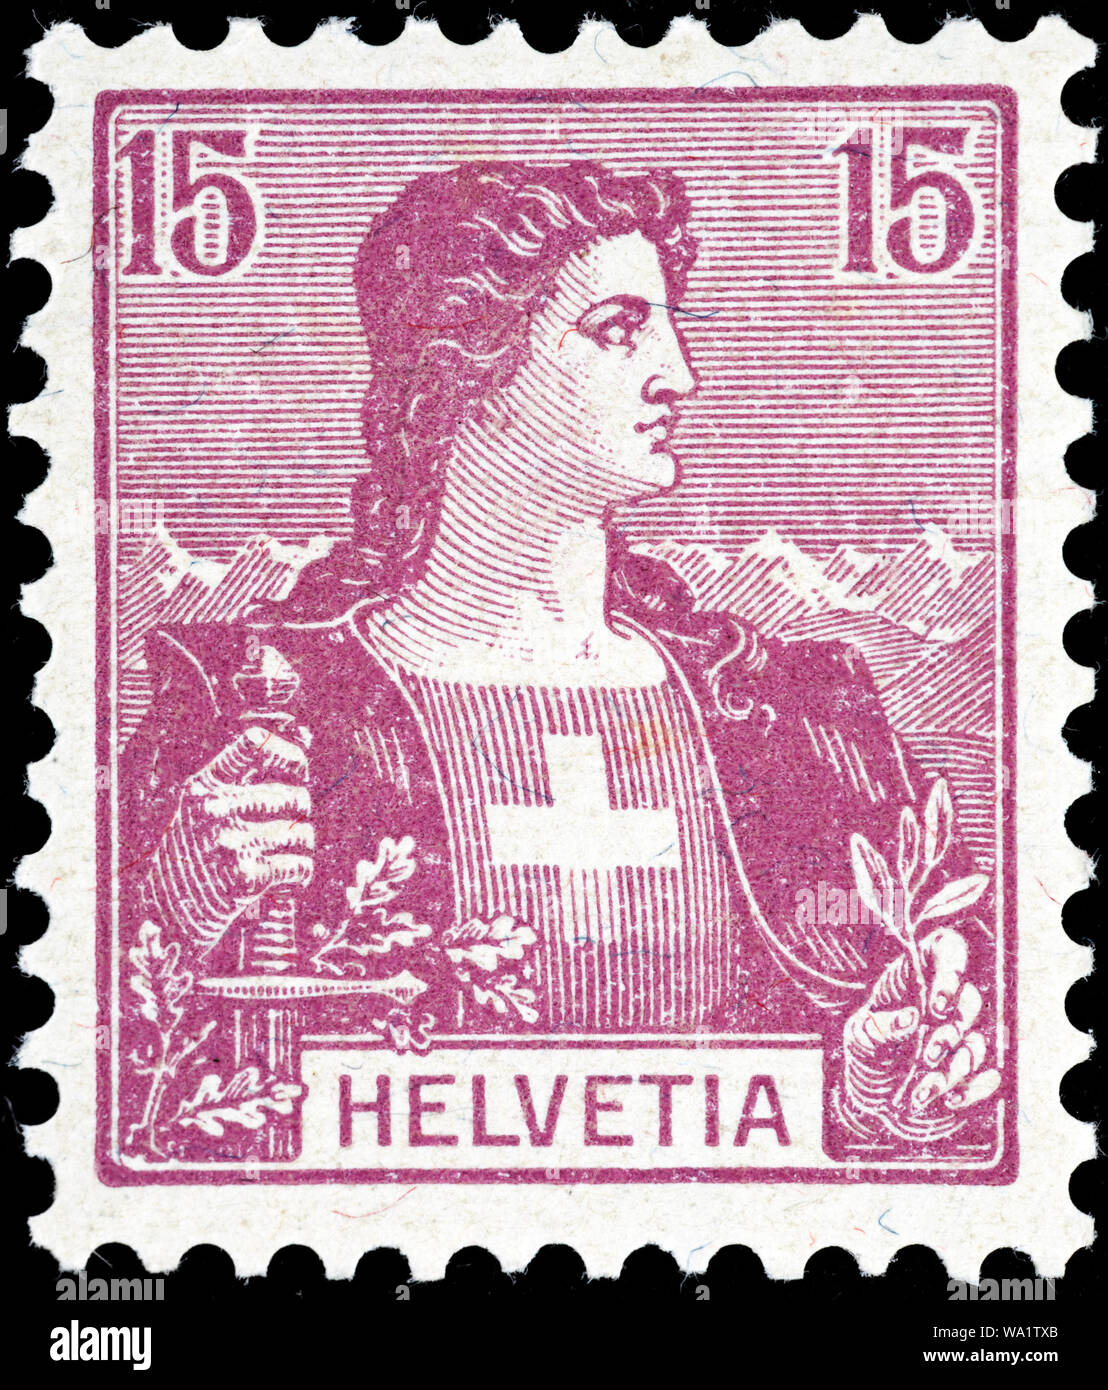 Helvetia, postage stamp, Switzerland, 1907 Stock Photo